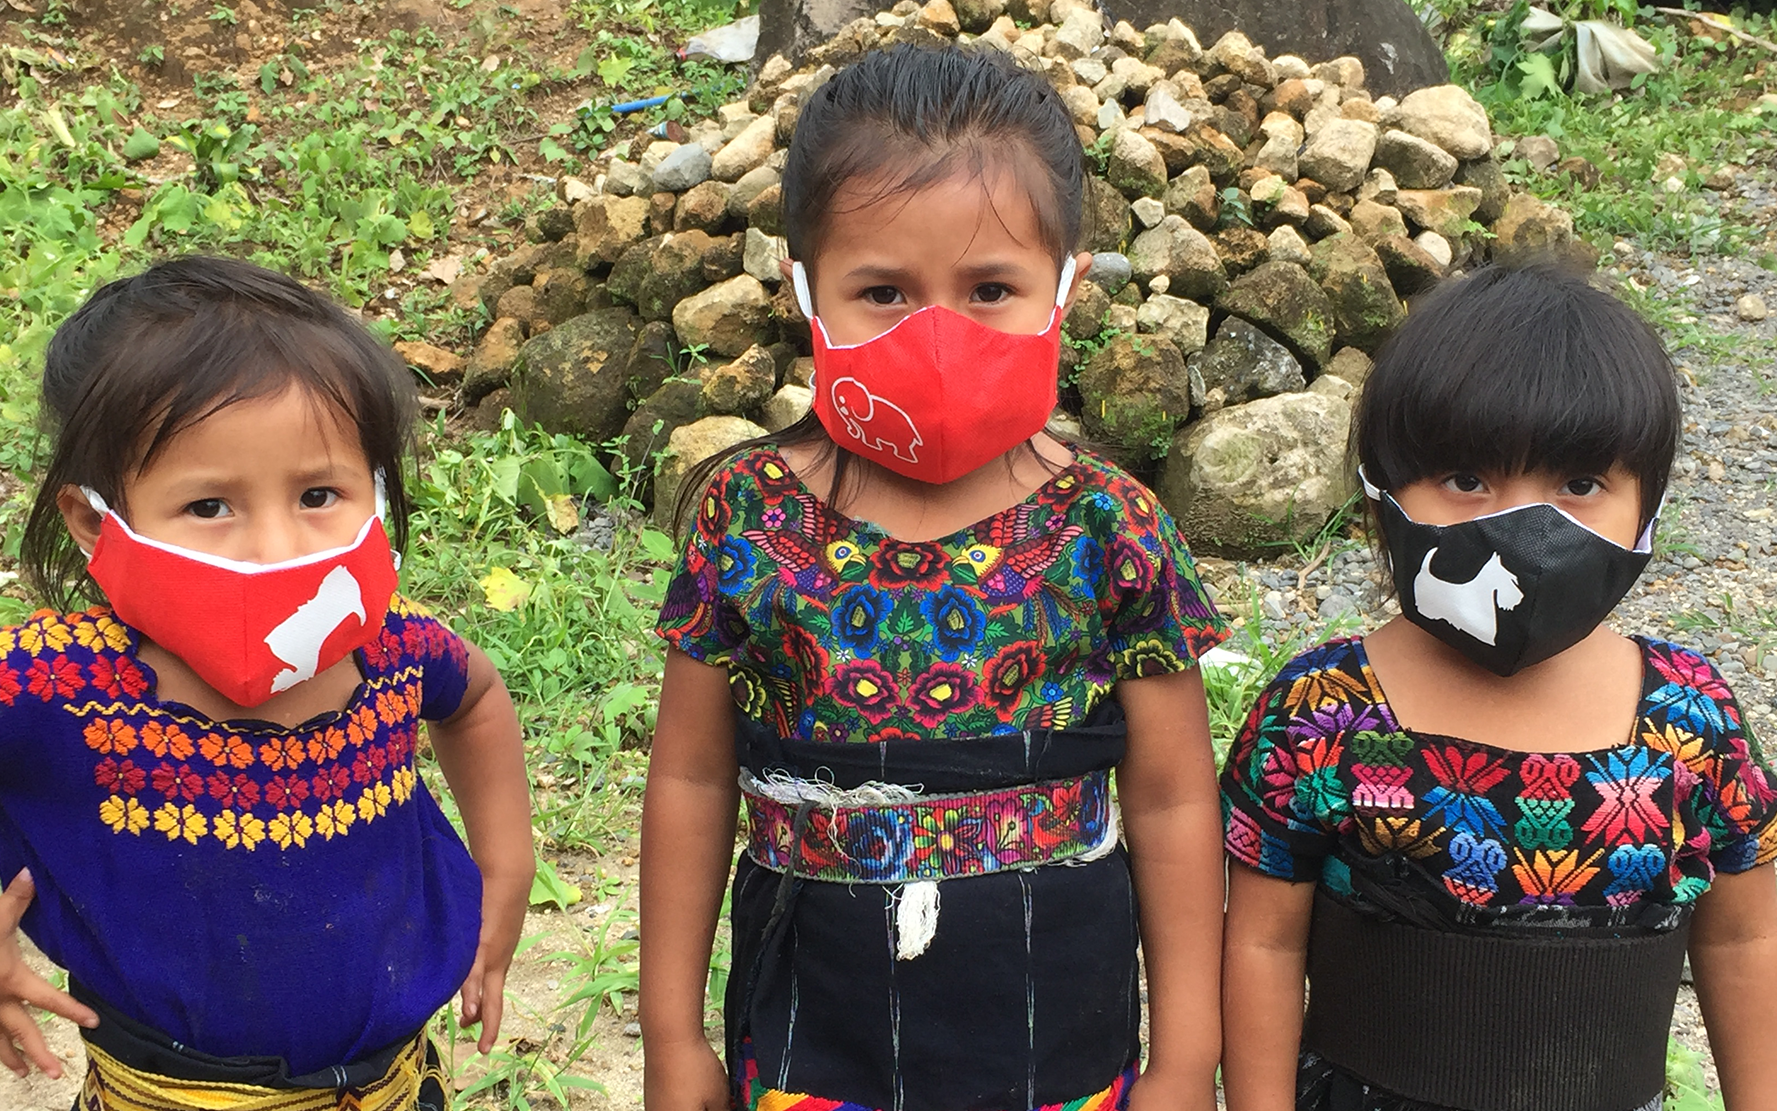 La siempre olvidadas: niñas y adolescentes en Guatemala